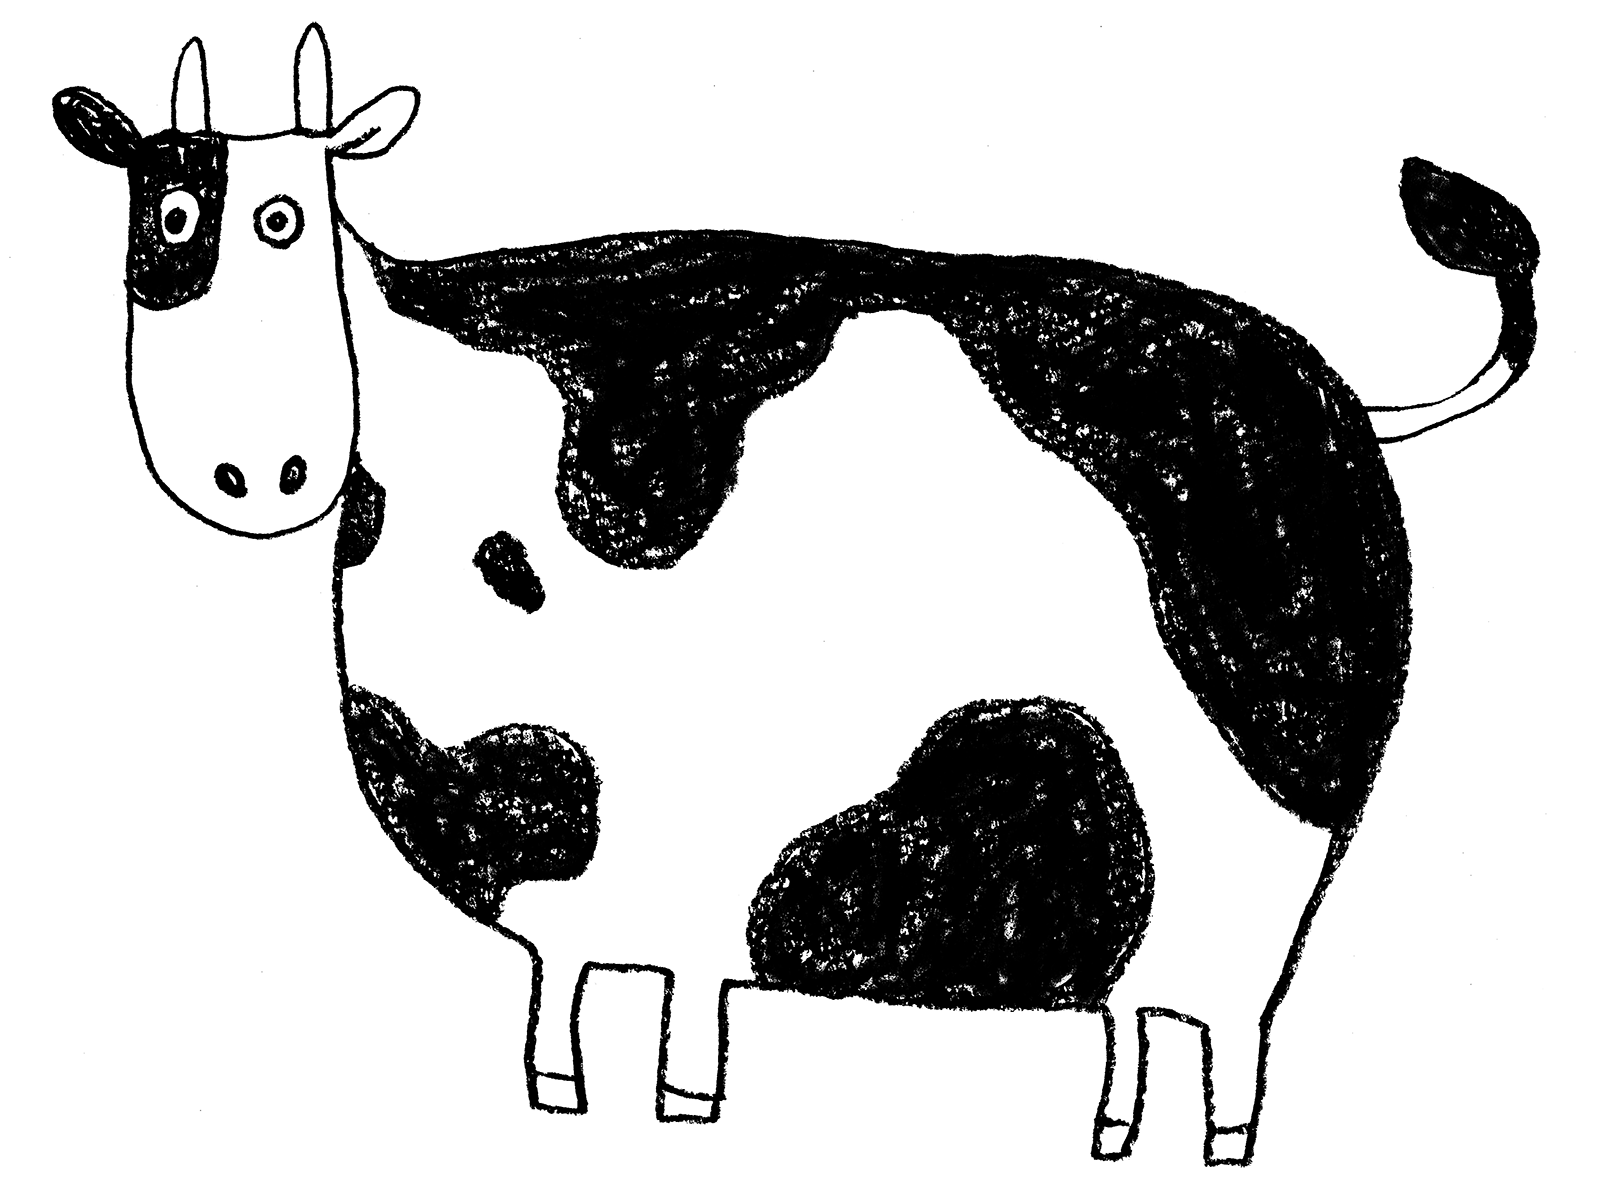 ゆるかわいい牛のイラスト 丑 21年干支 横向き 全身 えんぴつと画用紙